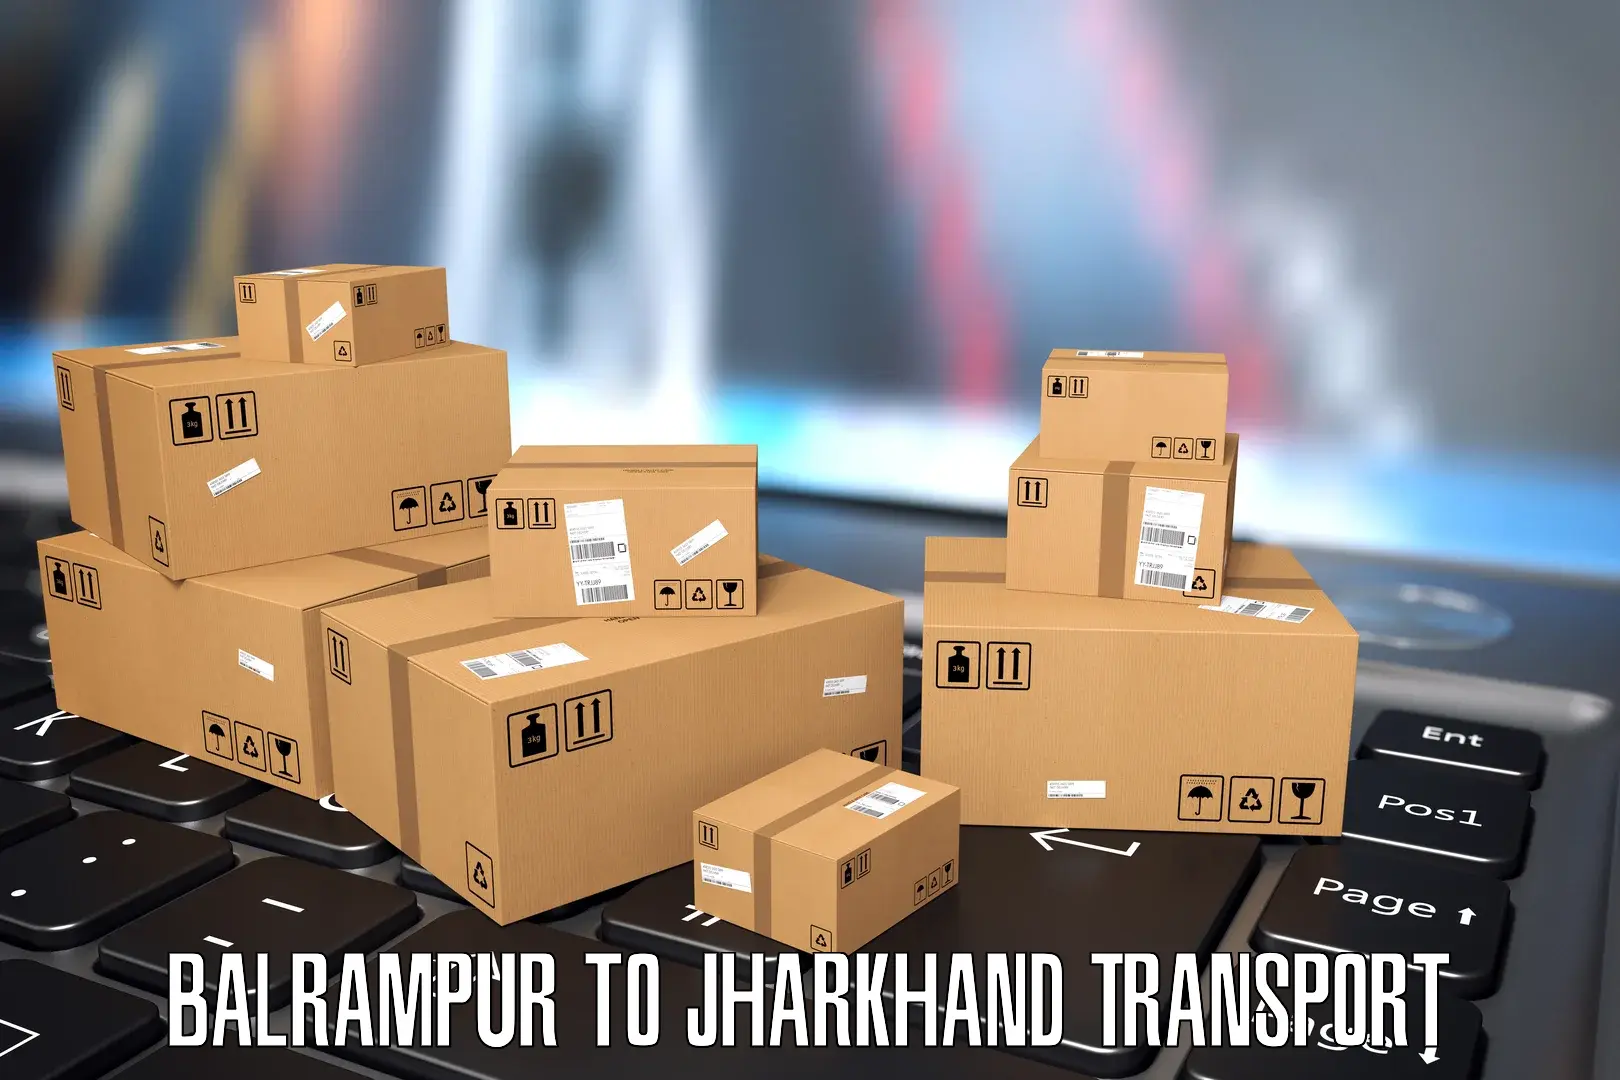 Online transport service Balrampur to Domchanch